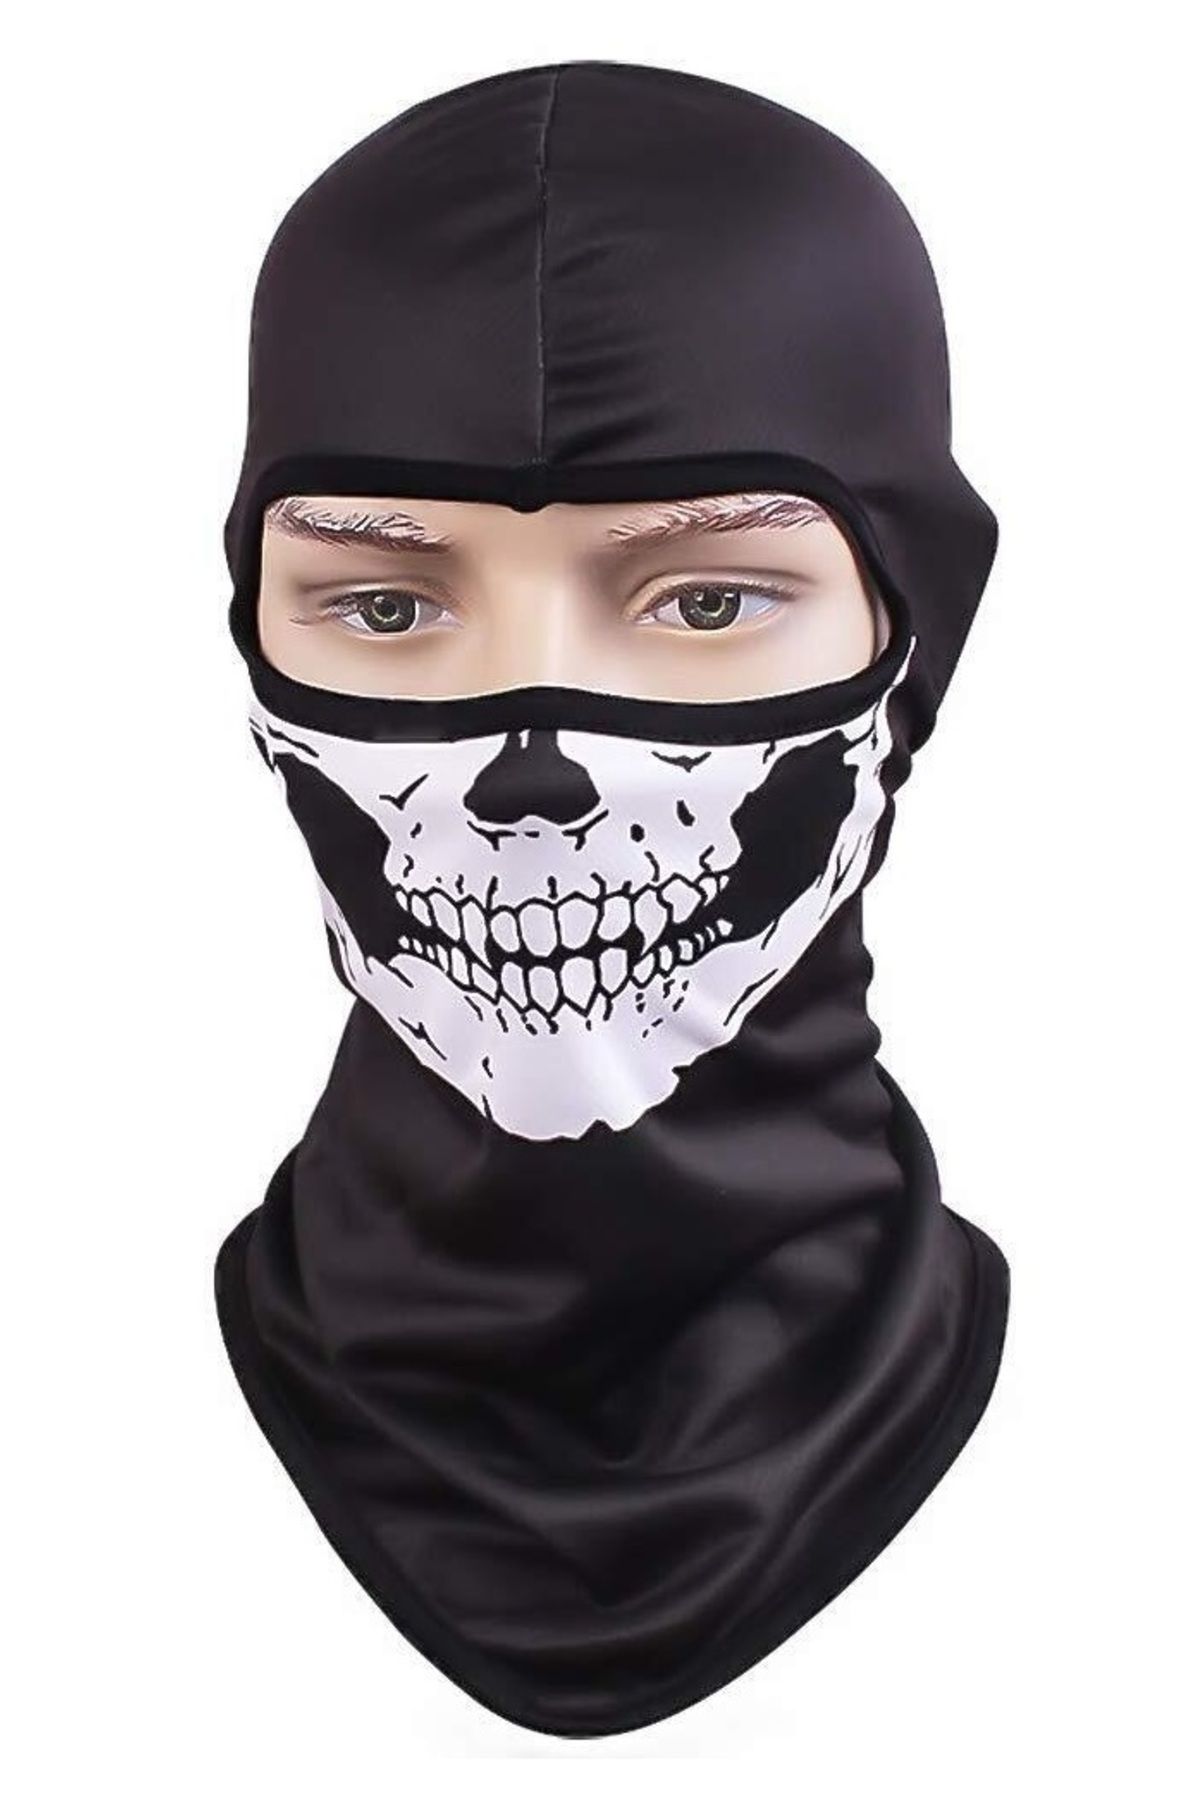 AnkaShop Motosiklet Kurukafa Balaklava Skull Mask Rüzgar Geçirmez Motor Maske Soğuk Yüz Koruma Kar Maskesi